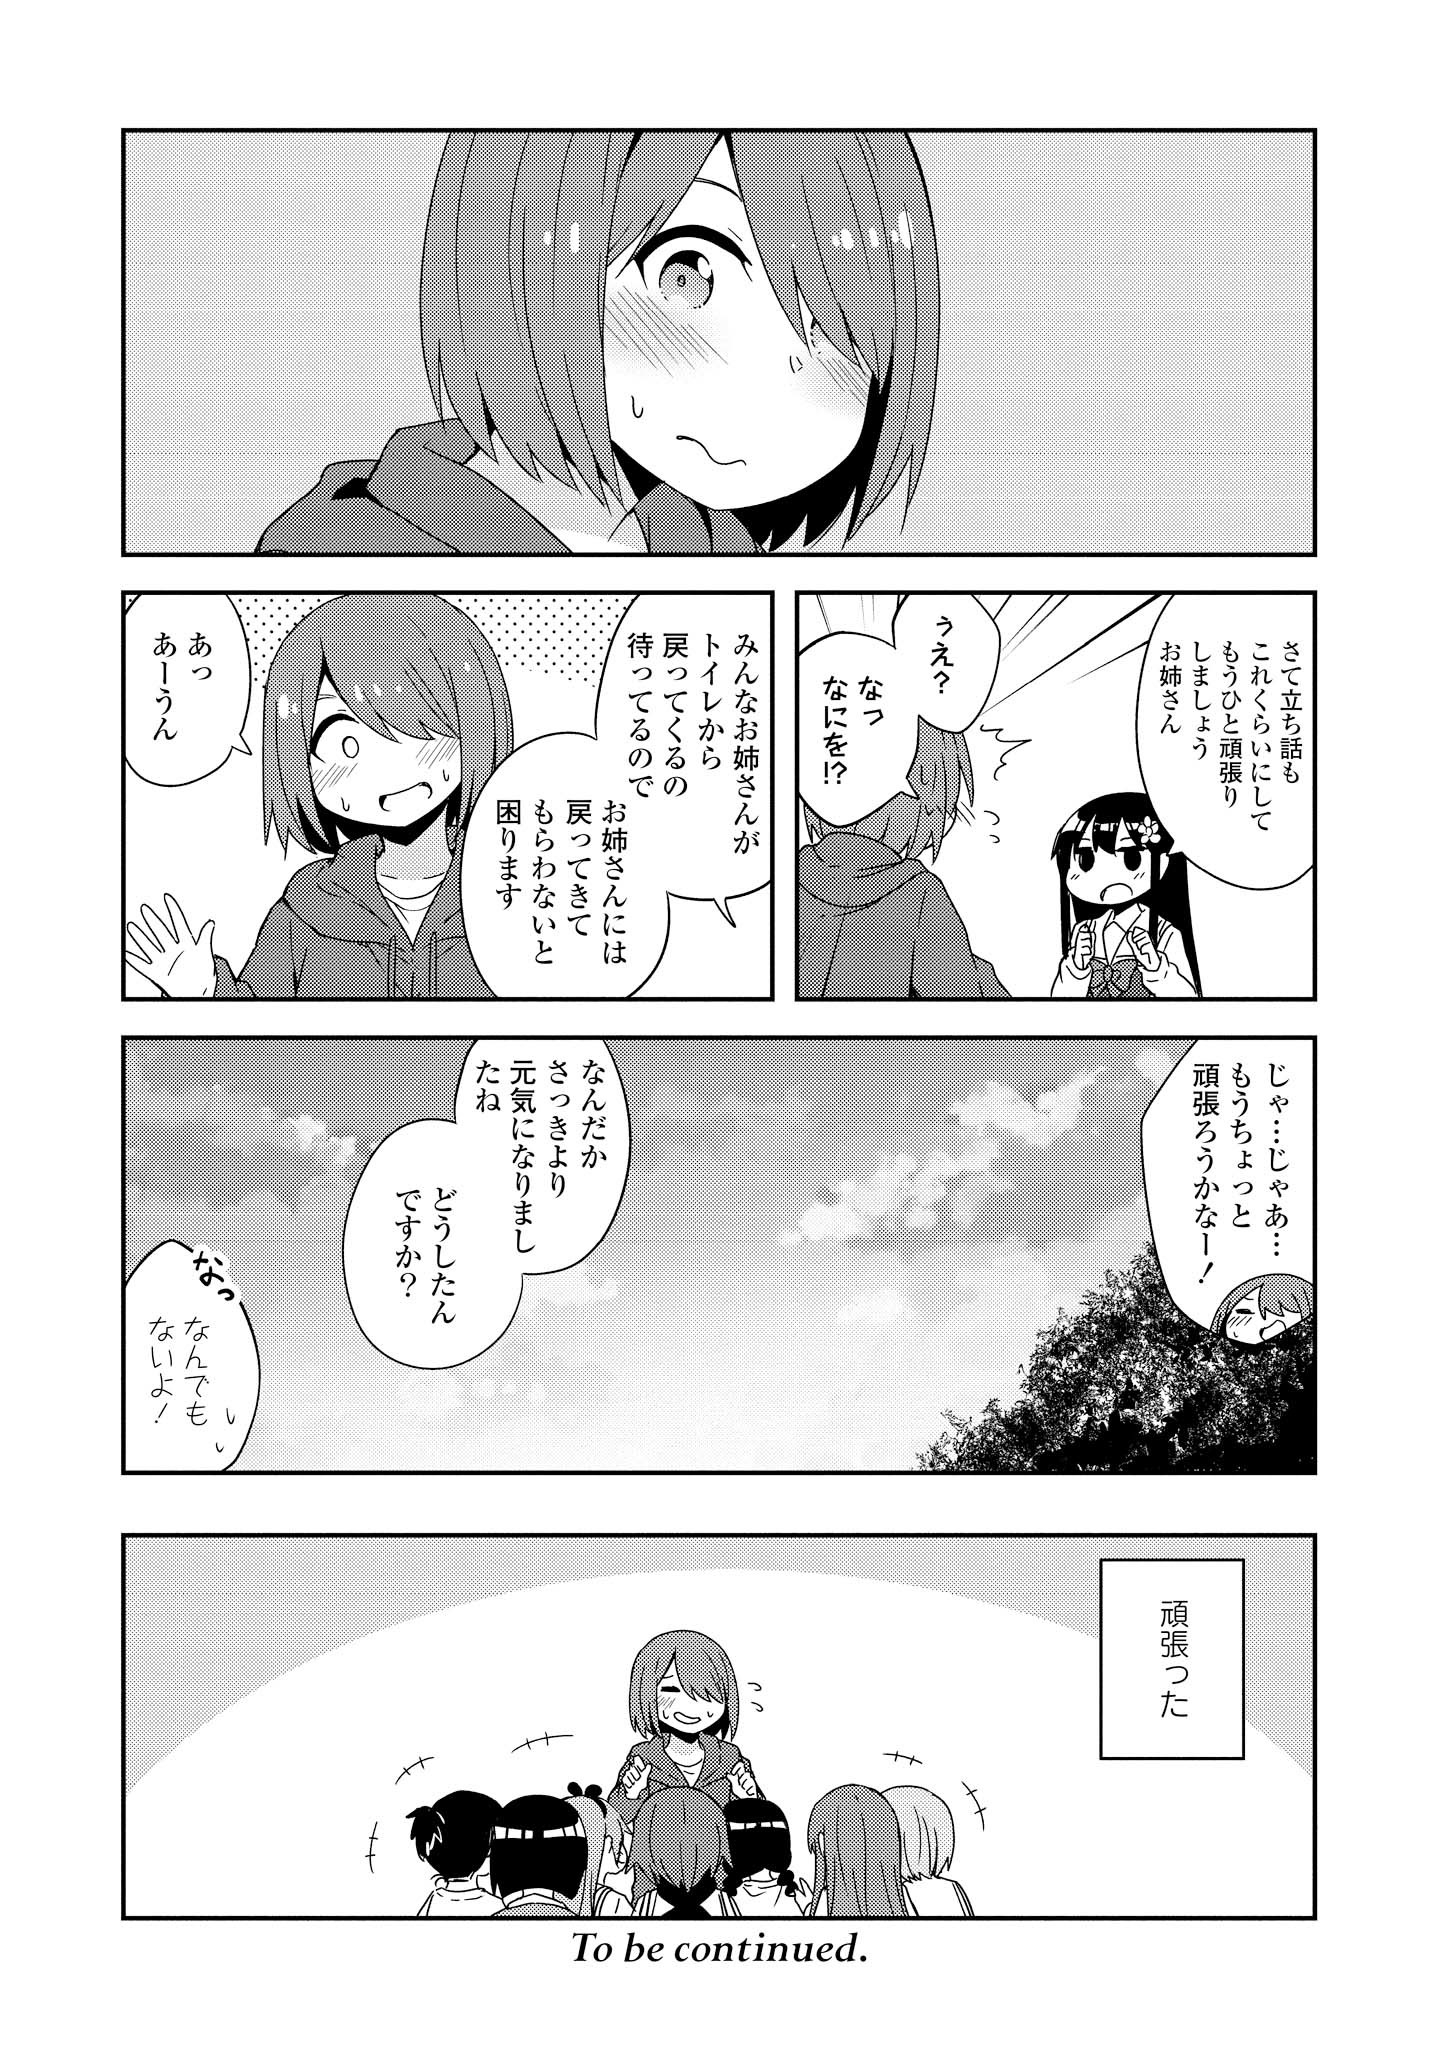 Watashi ni Tenshi ga Maiorita! - Chapter 36 - Page 20